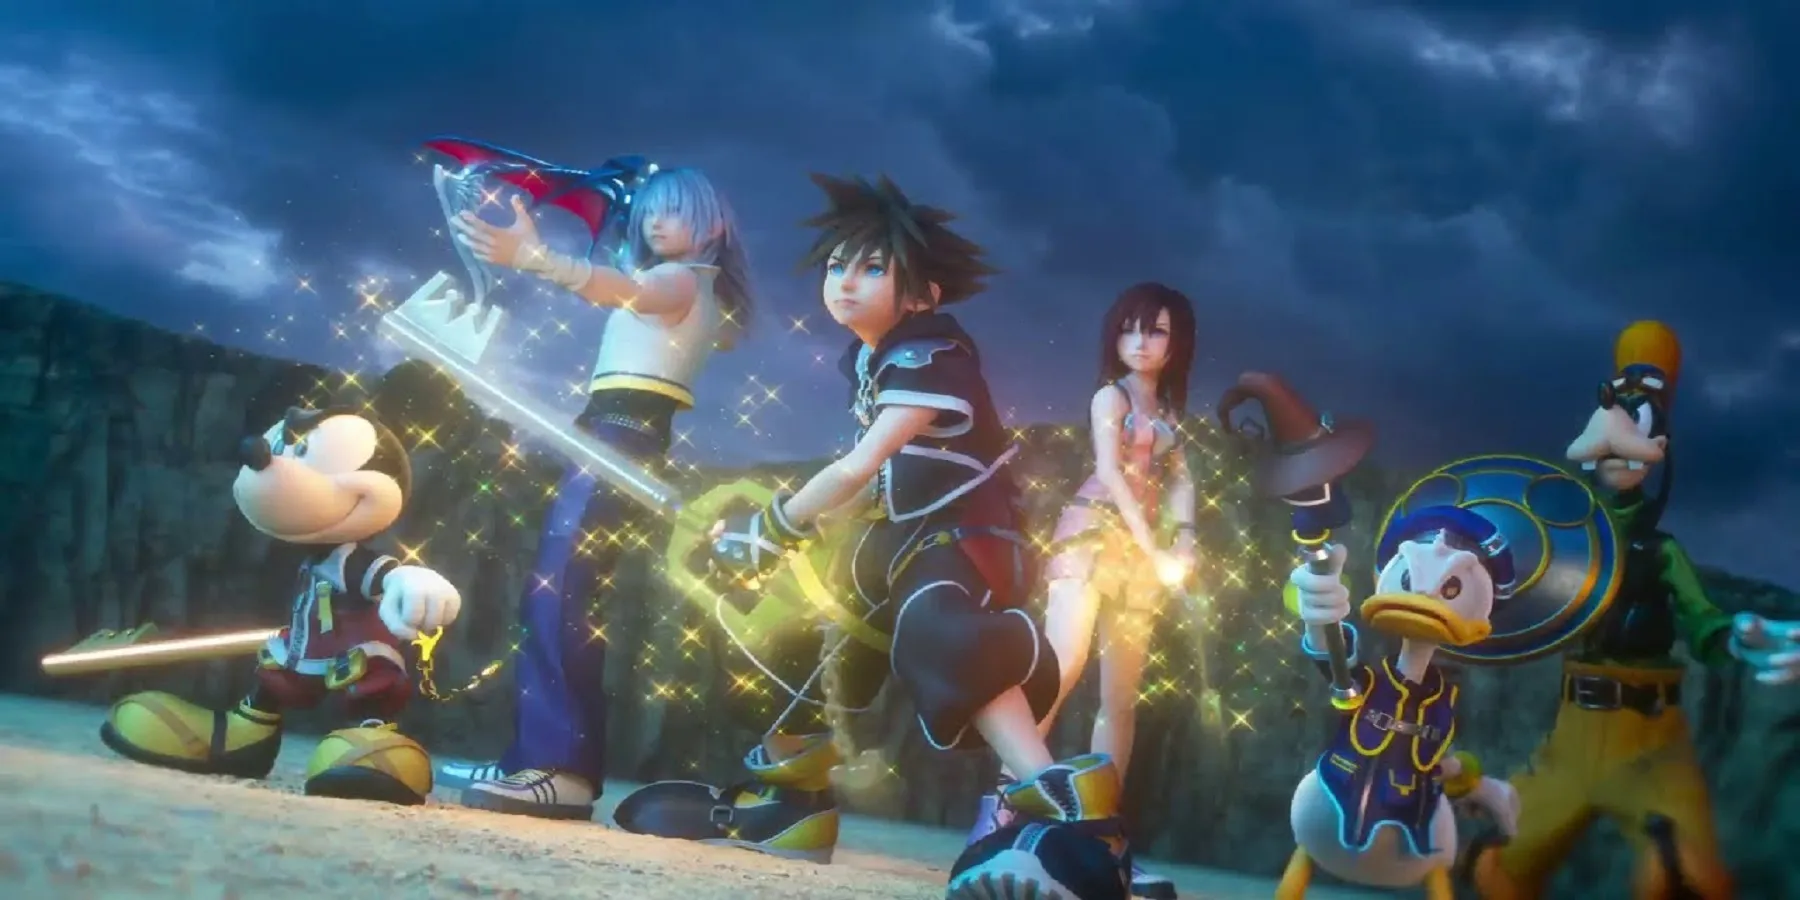 Ouverture de Kingdom Hearts 3 avec Sora et ses amis